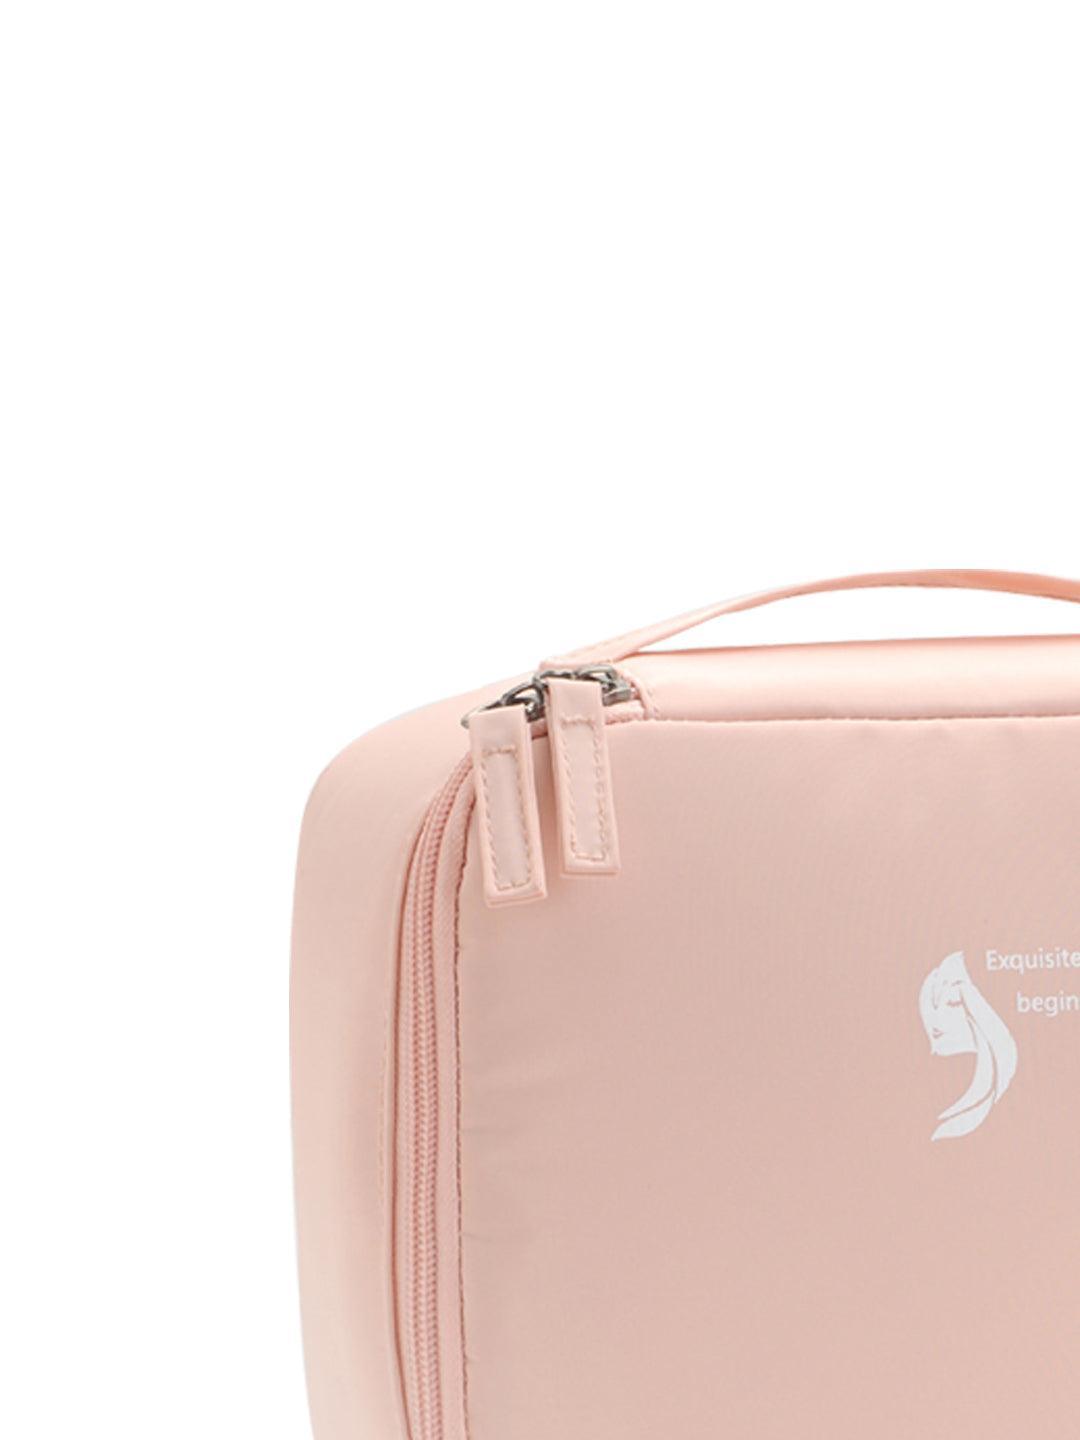 Buy NFI Essentials Multifunctional Cosmetic Bag With Hook|makeup  Organiser|vanity Bag For Travelling Kit Online